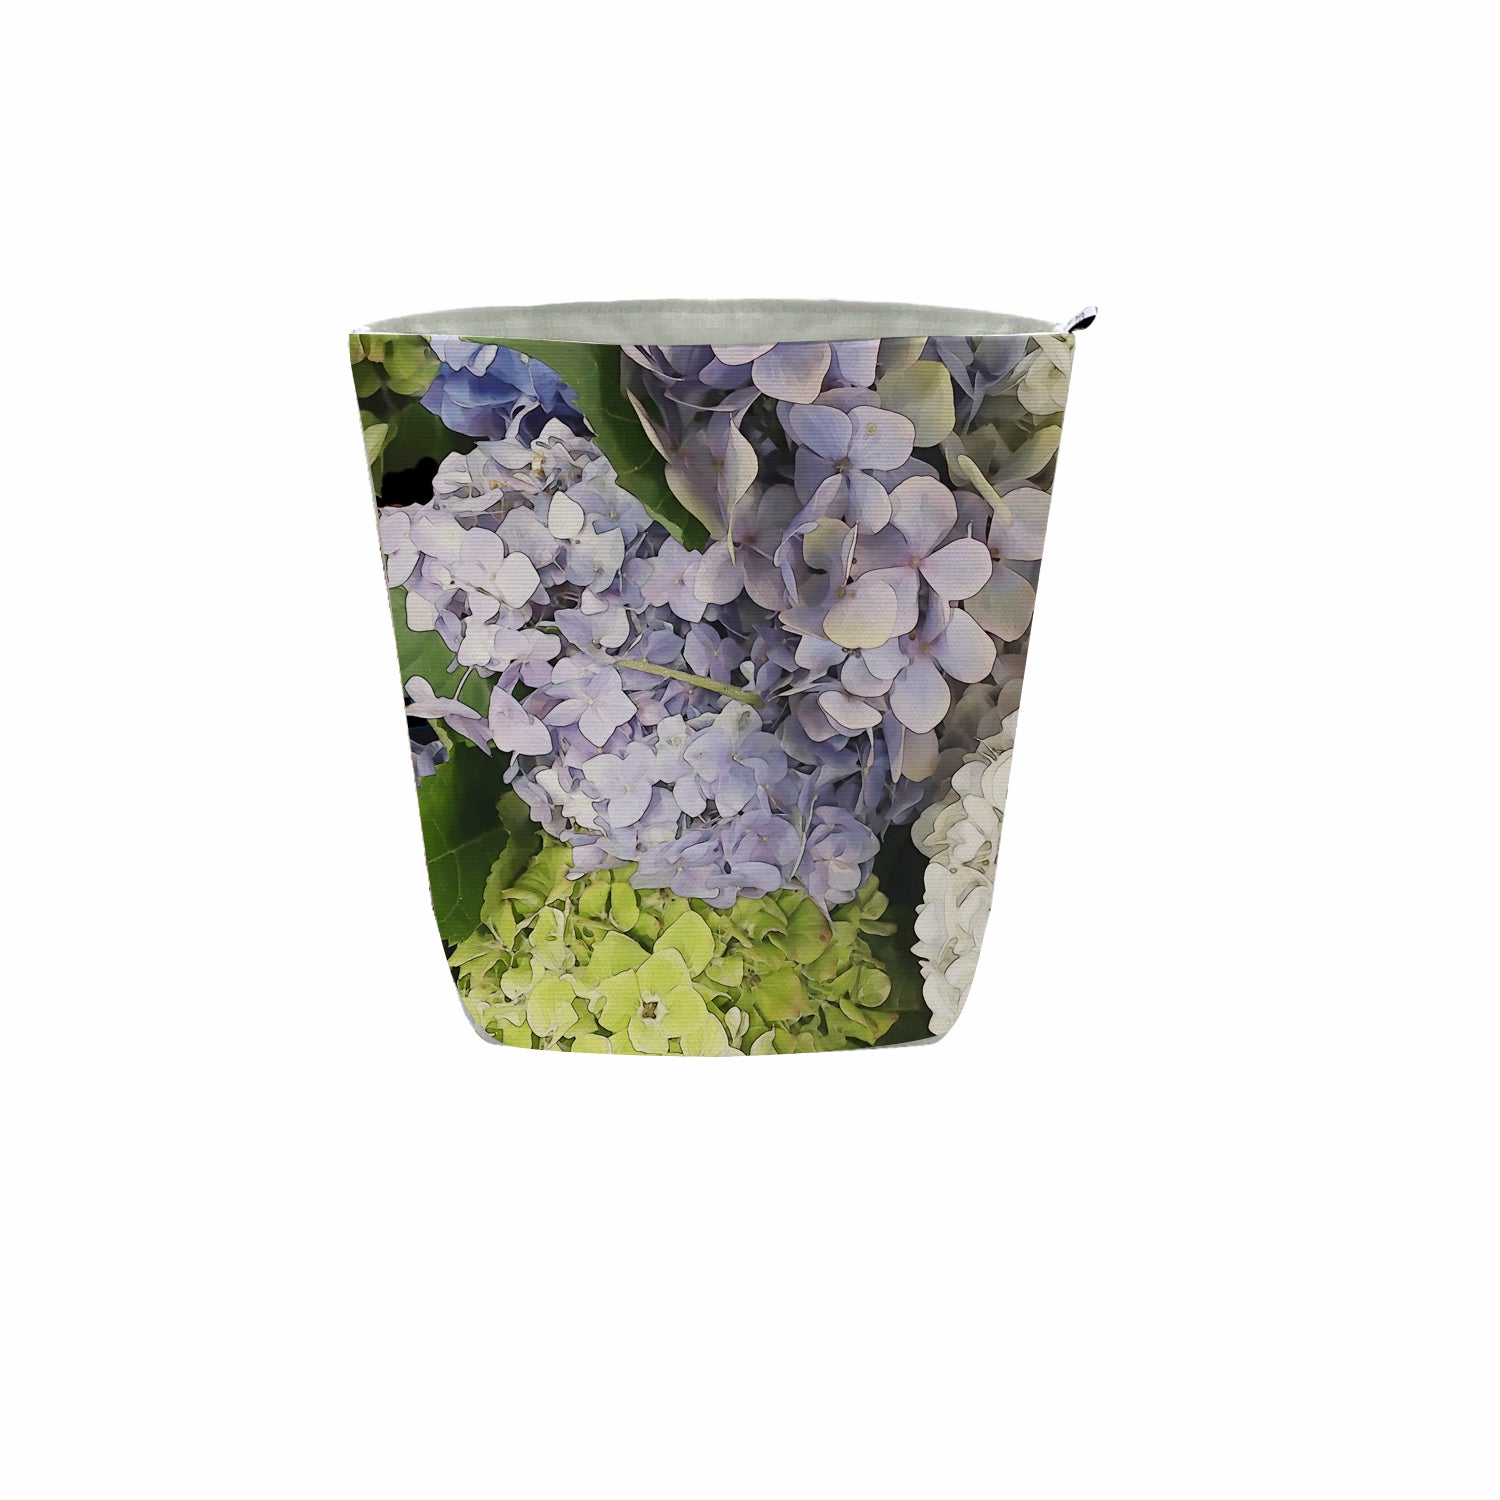 Fabric Pot in Hydrangea Trio